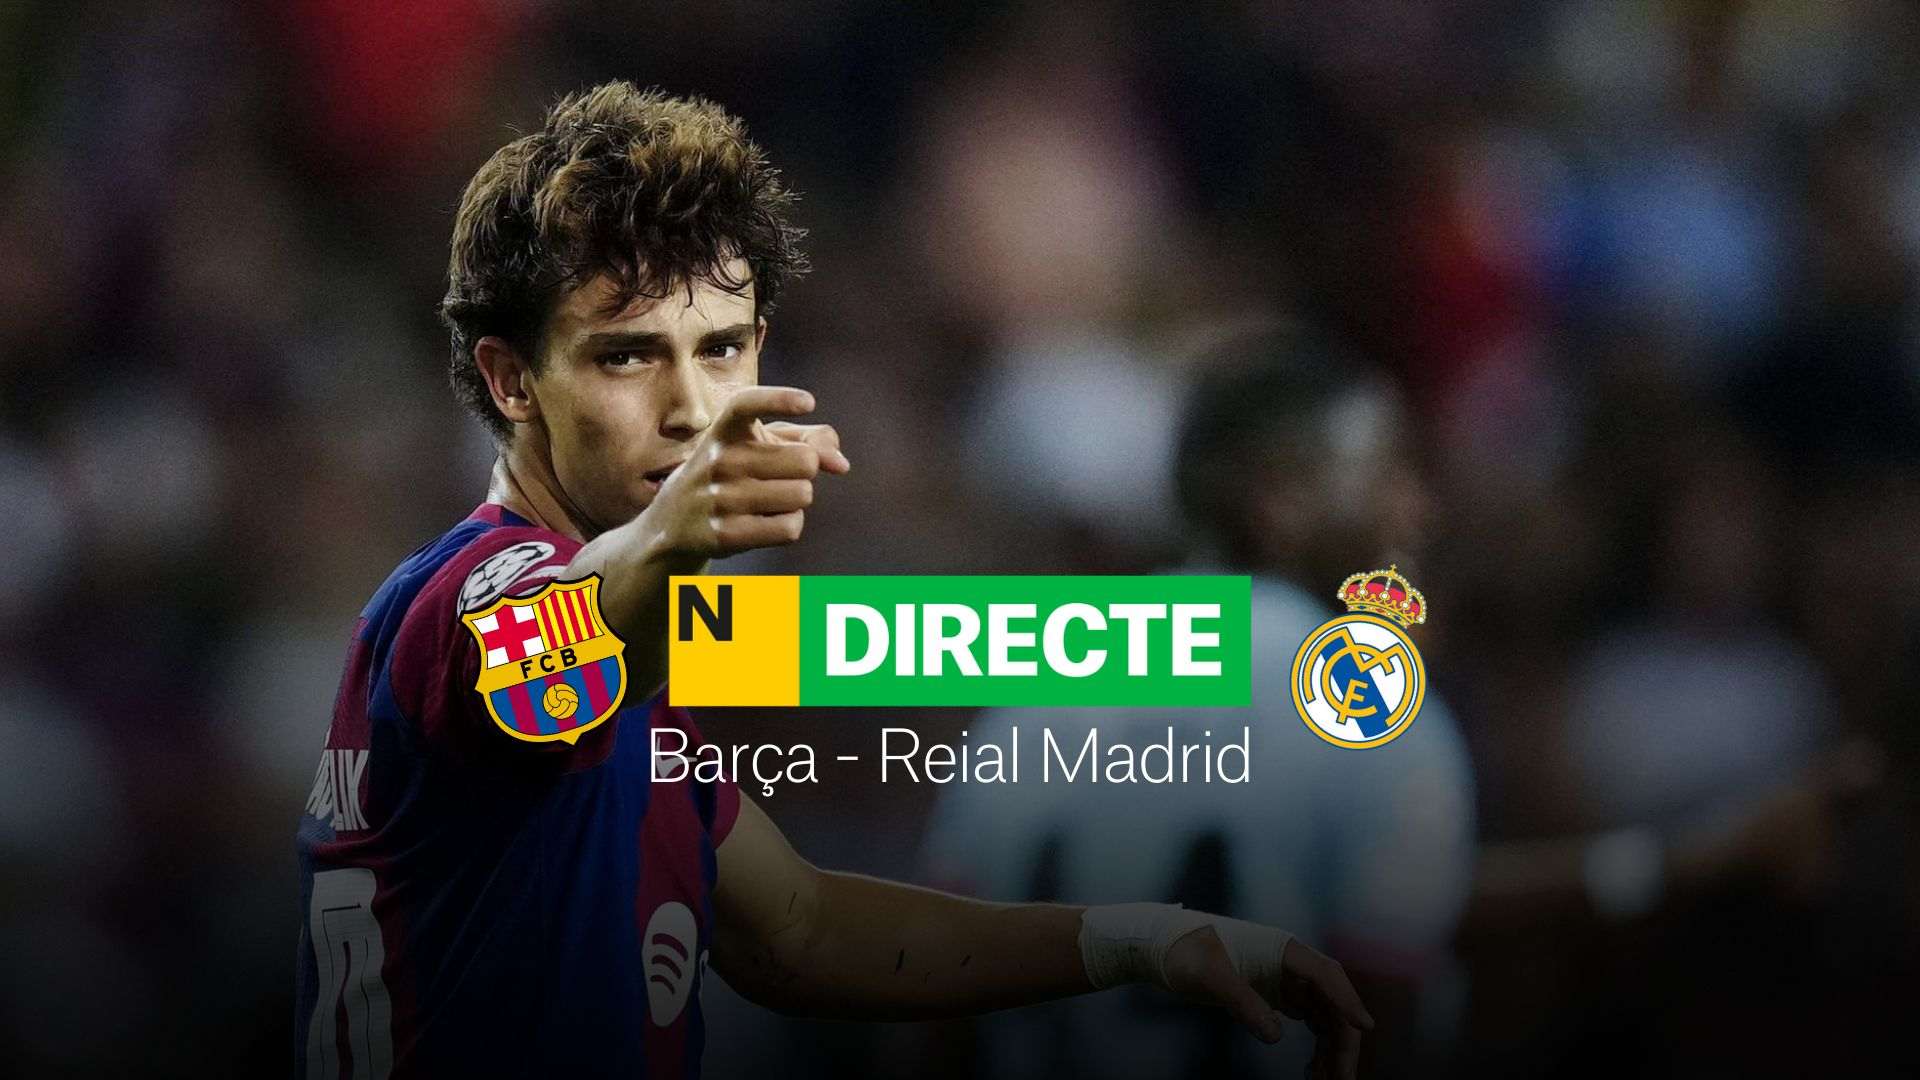 Barça - Real Madrid, Clásico de LaLiga en Directo | Resultado, resumen y goles